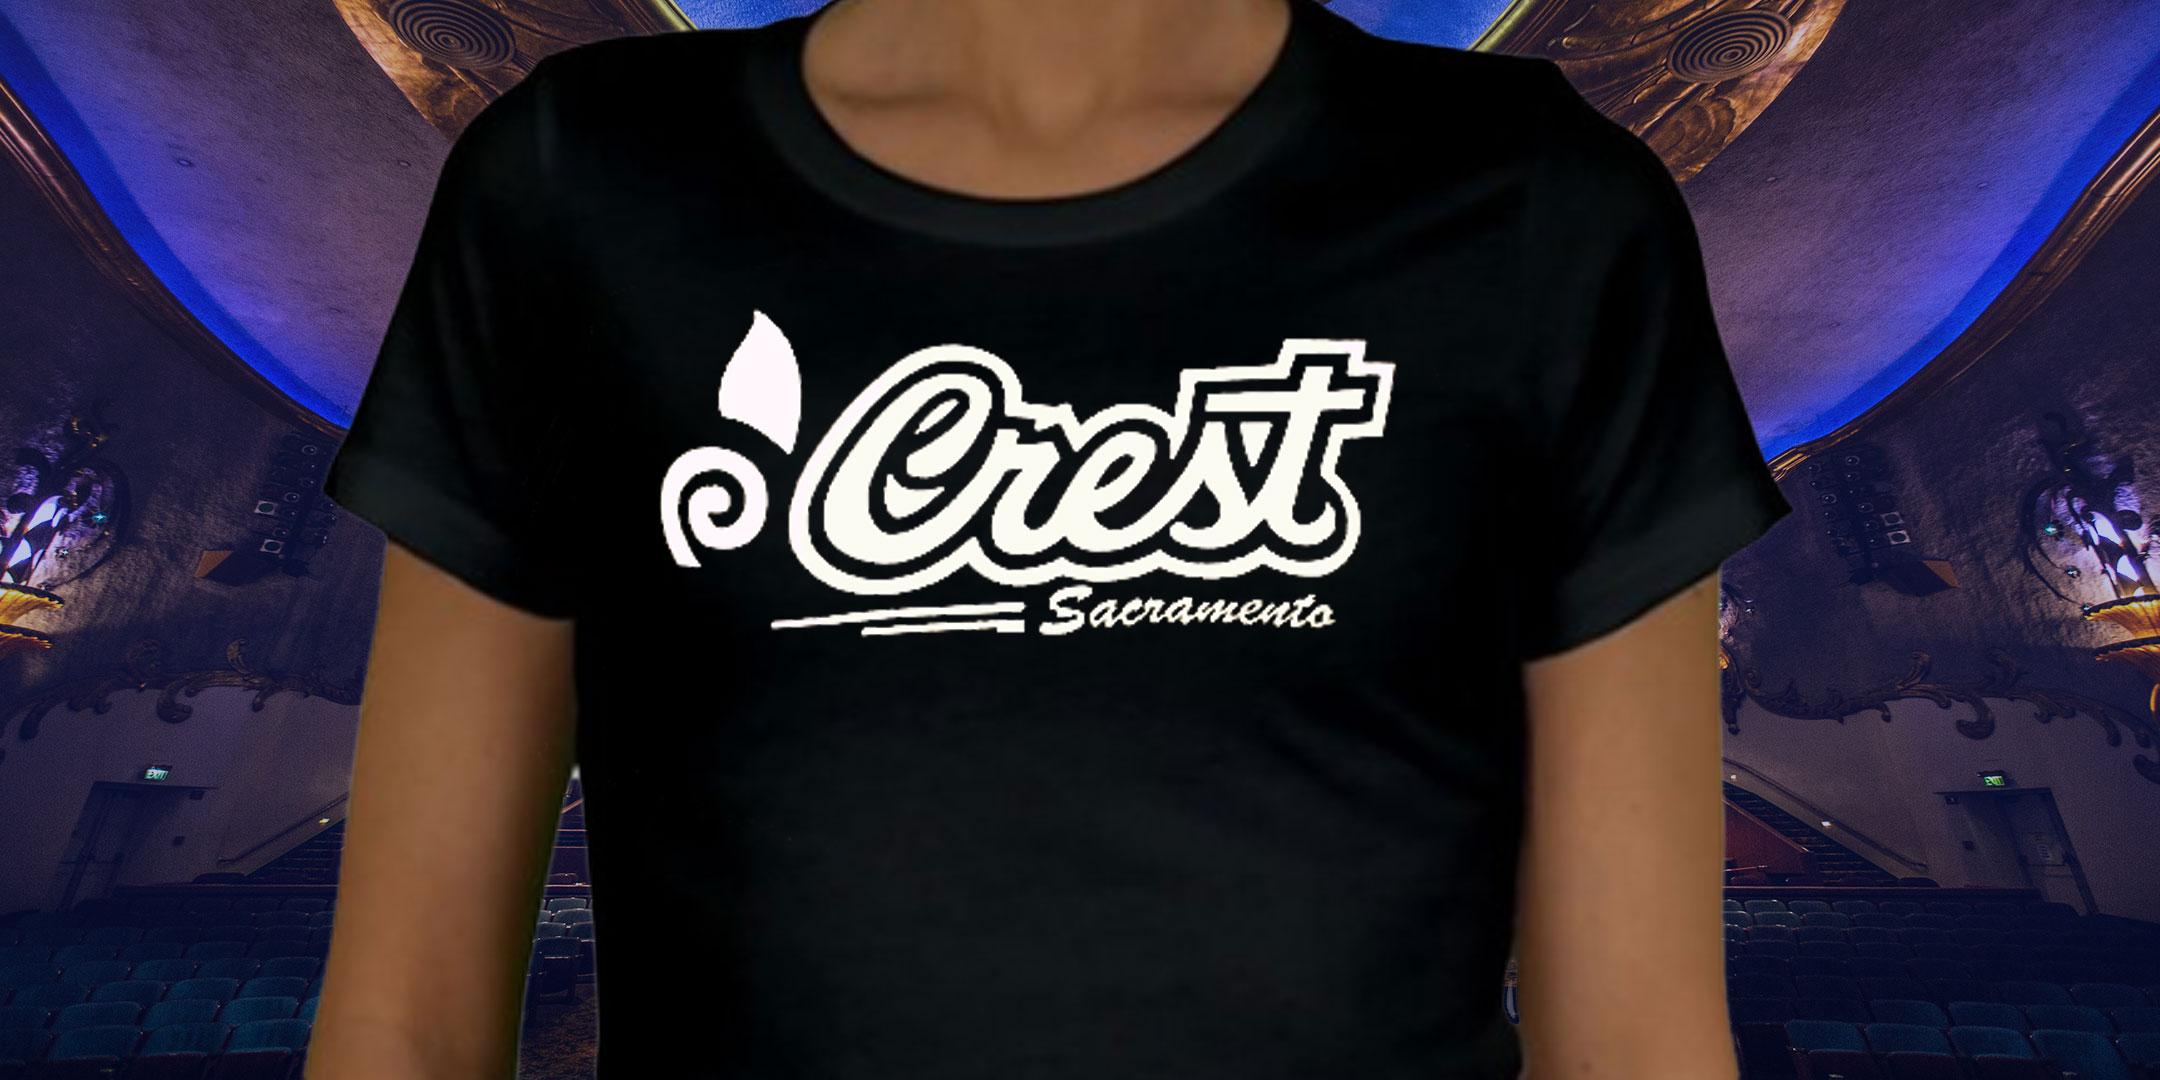 Crest T-Shirt – Women